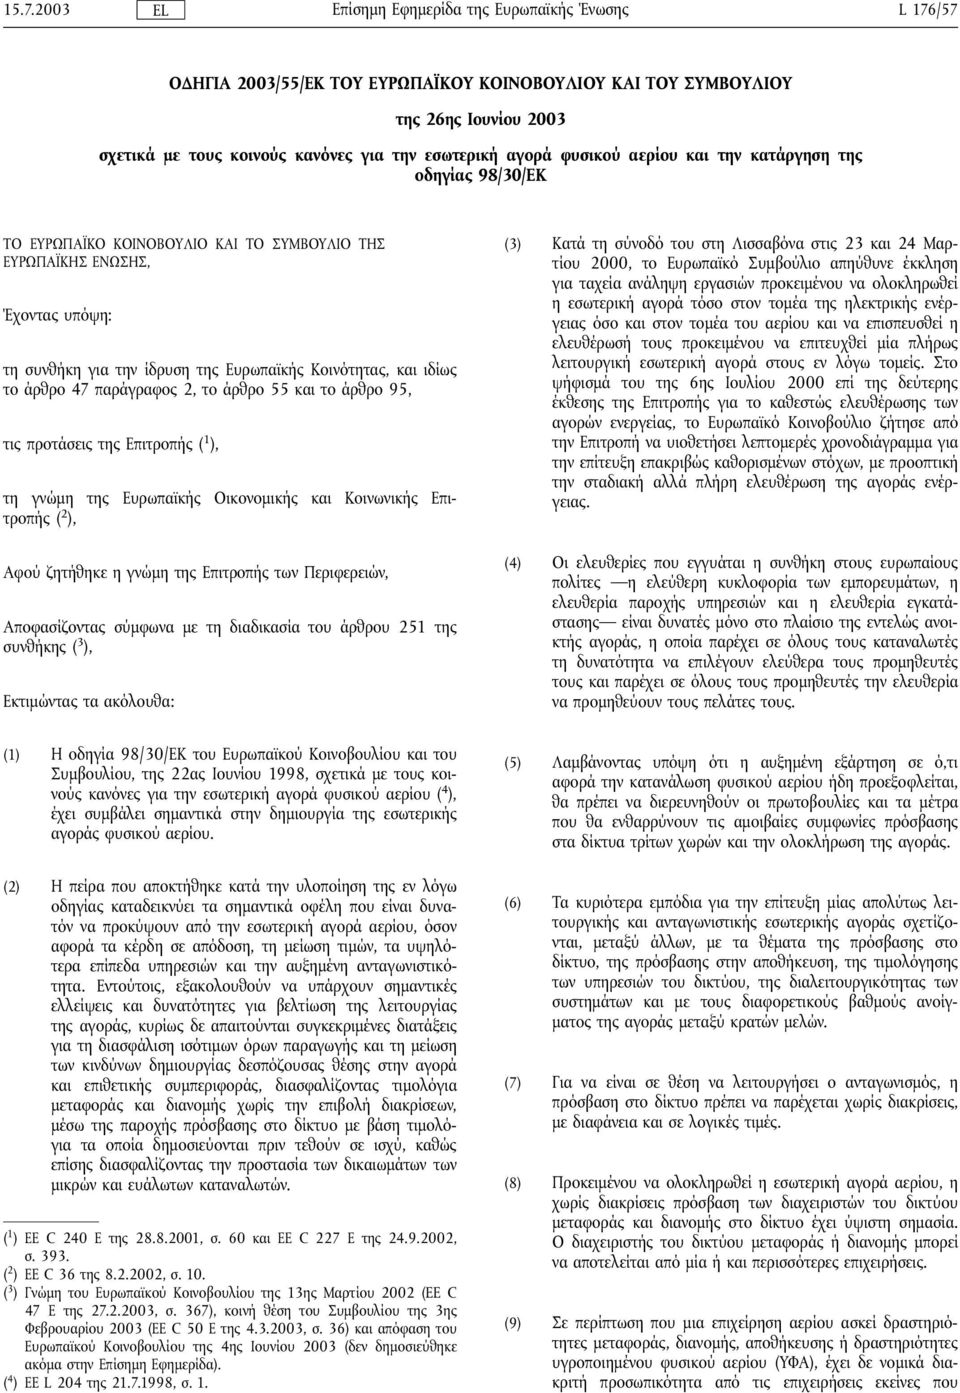 και το άρθρο 95, τις προτάσεις της Επιτροπής ( 1 ), τη γνώµη της Ευρωπαϊκής Οικονοµικής και Κοινωνικής Επιτροπής ( 2 ), Αφού ζητήθηκε η γνώµη της Επιτροπής των Περιφερειών, Αποφασίζοντας σύµφωνα µε